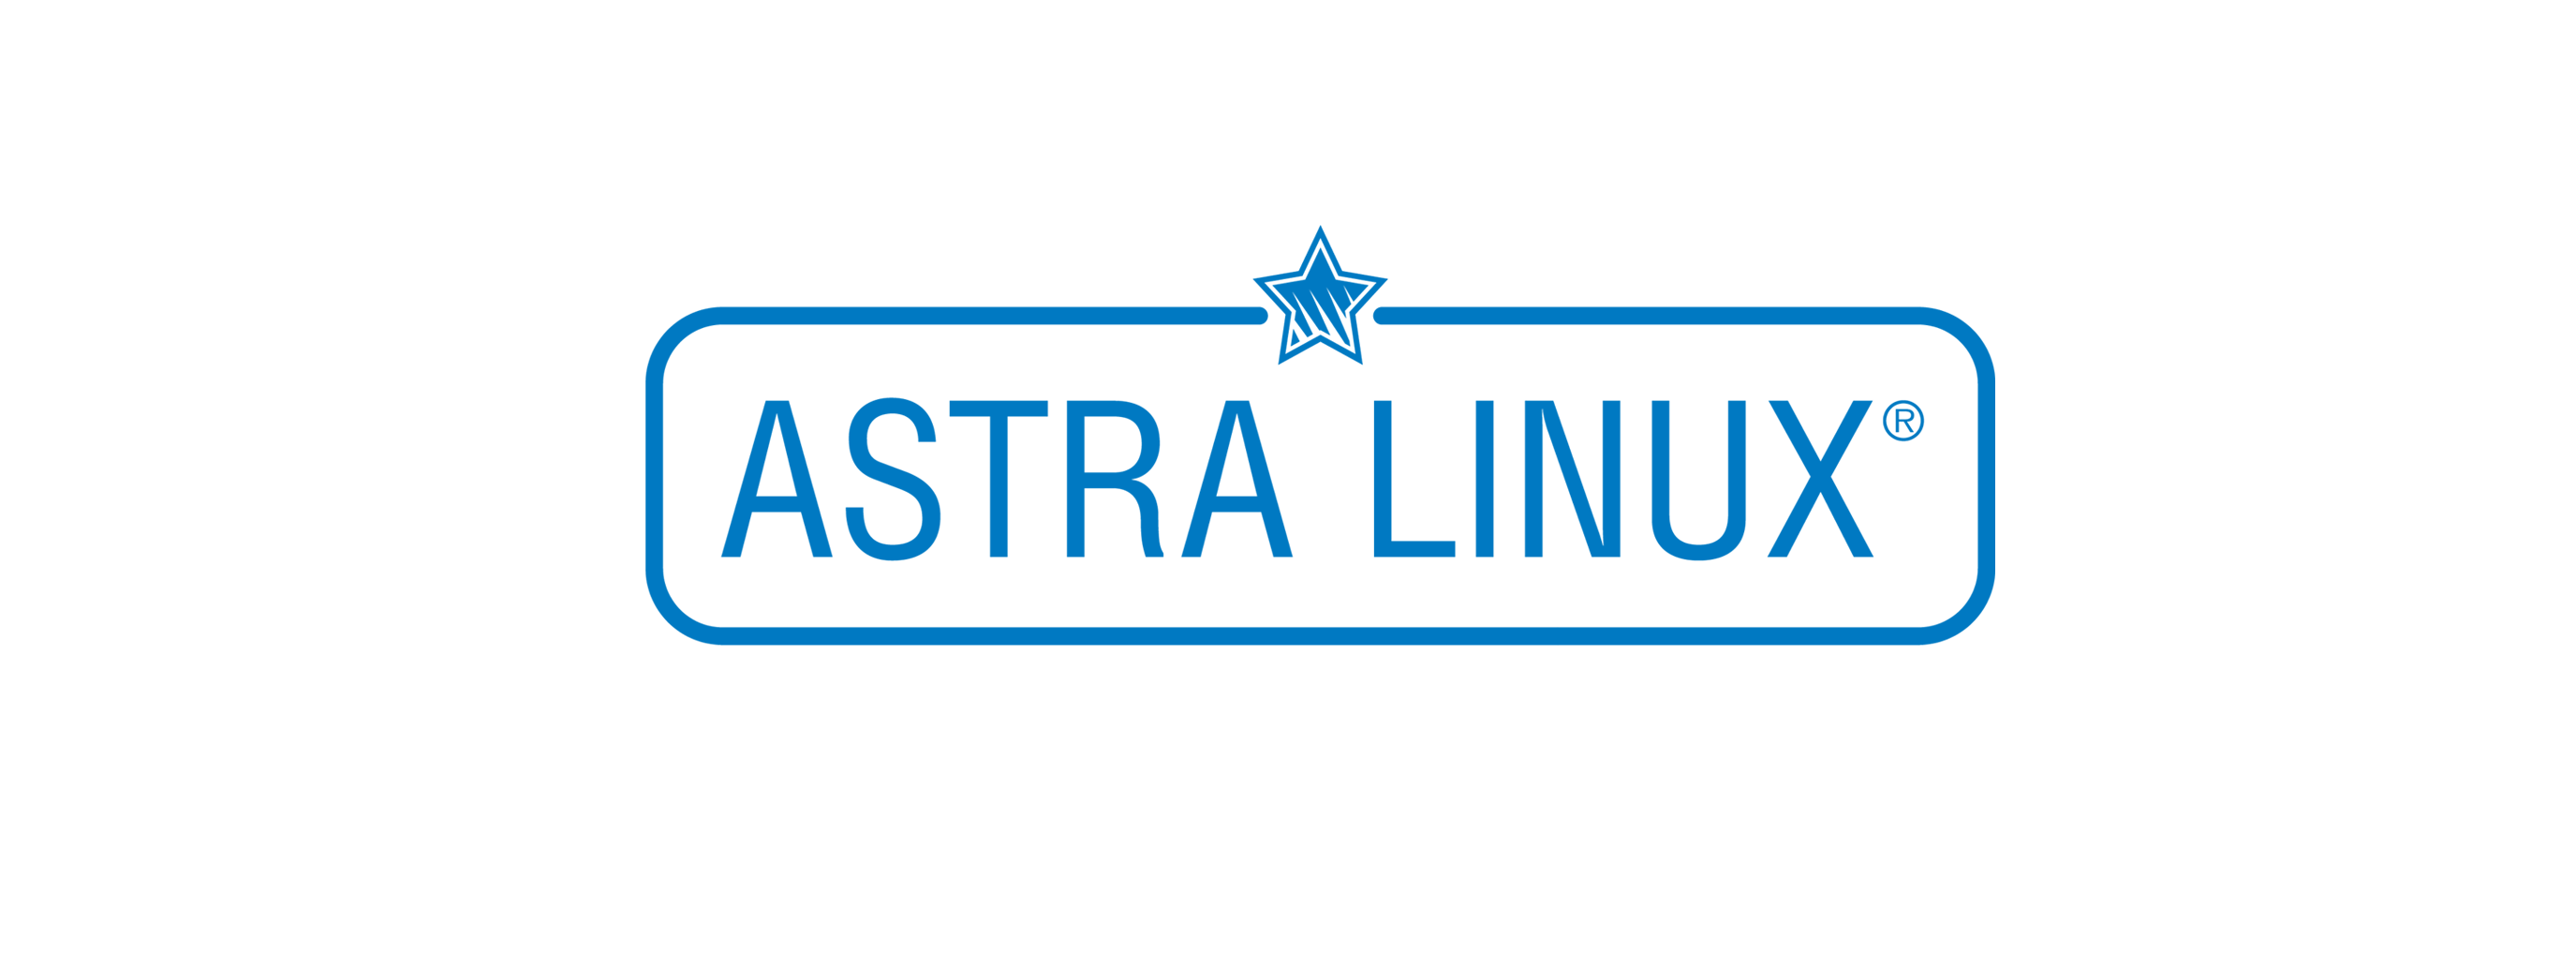 Лицензия РусБИТех Astra Linux Special Edition (очередное обновление 1.7), уровень защищенности Максимальный (Смоленск), РУСБ.10015-01 (ФСТЭК), Russian, на 12 месяцев базовая лицензия для тонкого клиента, электронный ключ (OS2101X8617COP000TN02-SO12) Astra Linux Special Edition (очередное обновление 1.7), уровень защищенности Максимальный (Смоленск) - фото 1